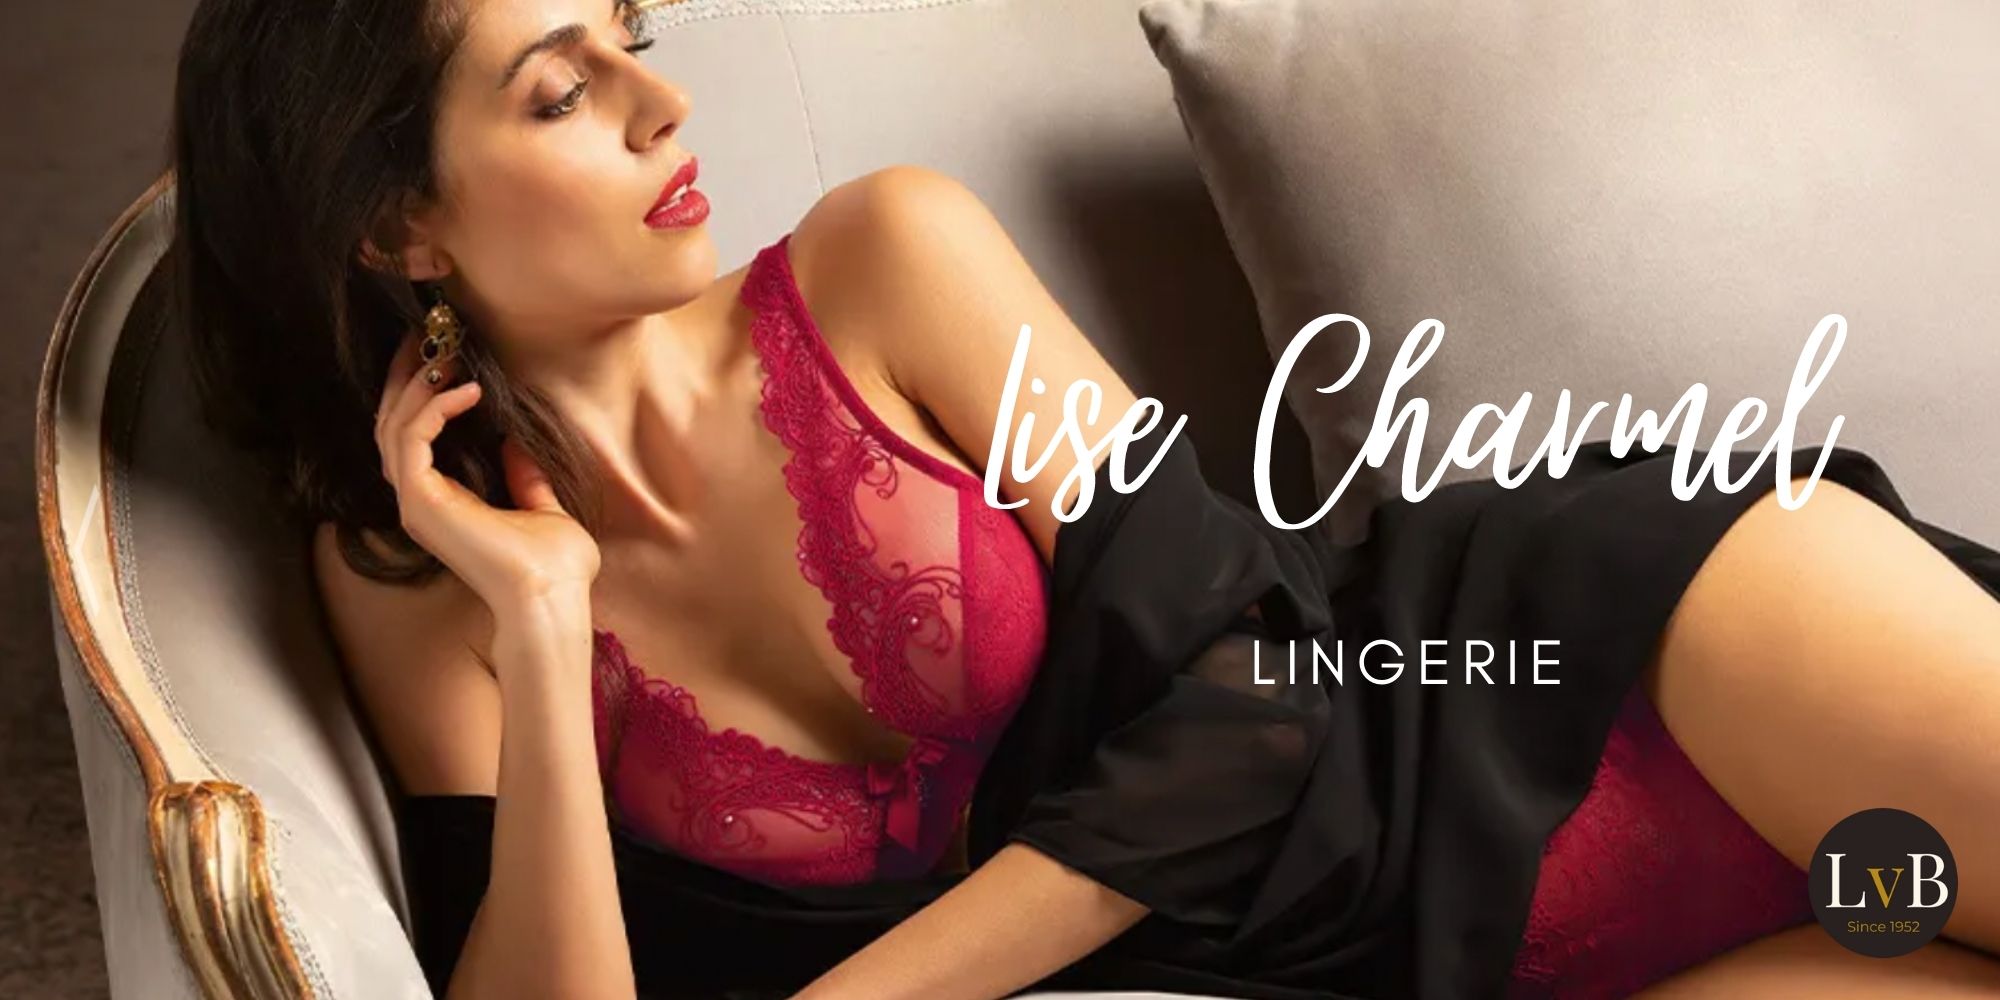 Lise Charmel lingerie